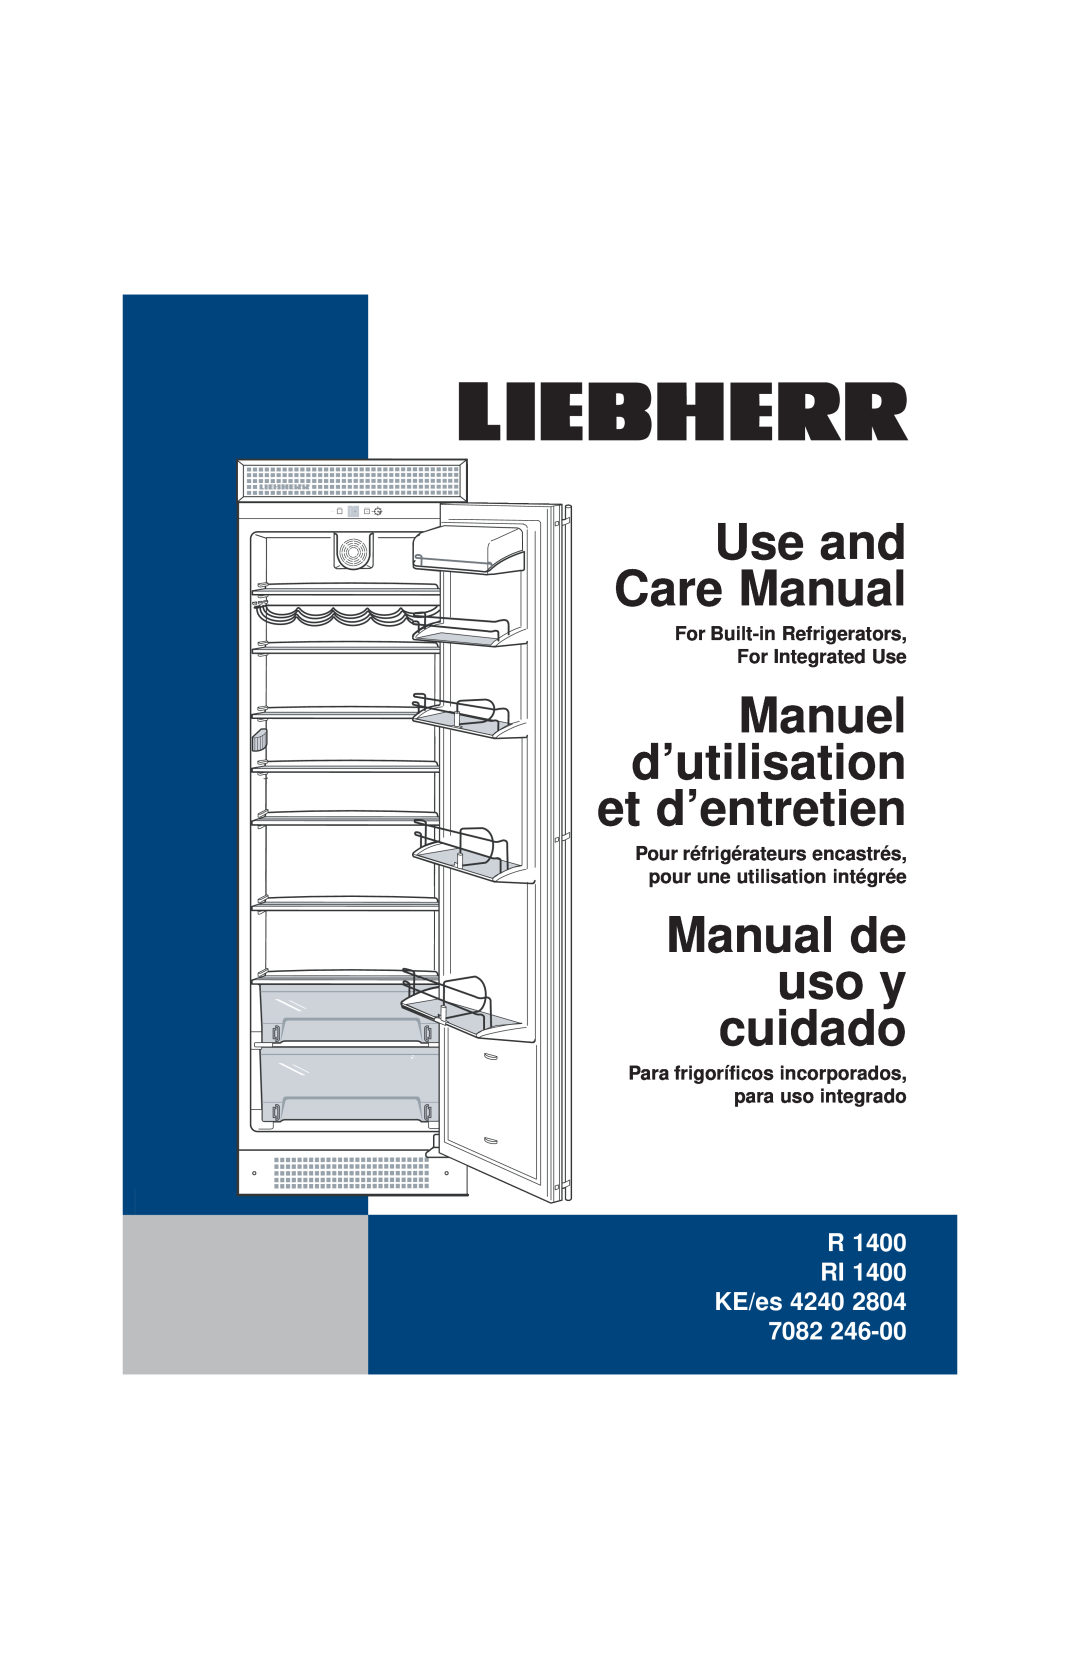 Liebherr RI1400 manuel dutilisation Use and Care Manual, Manuel d’utilisation et d’entretien, Manual de uso y cuidado 